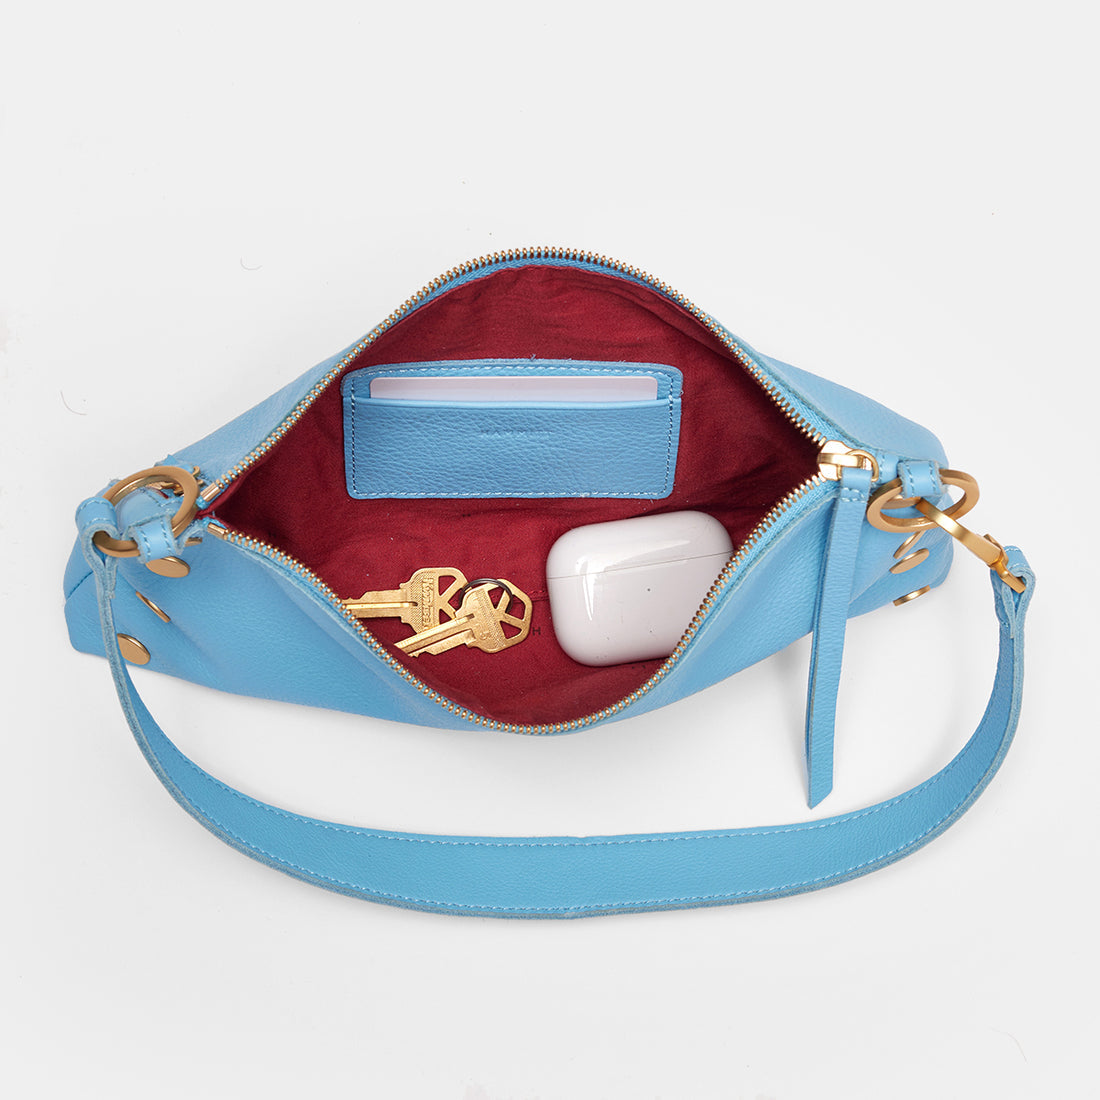 Kyle Sea Sprite Blue/Brushed Gold Handbag